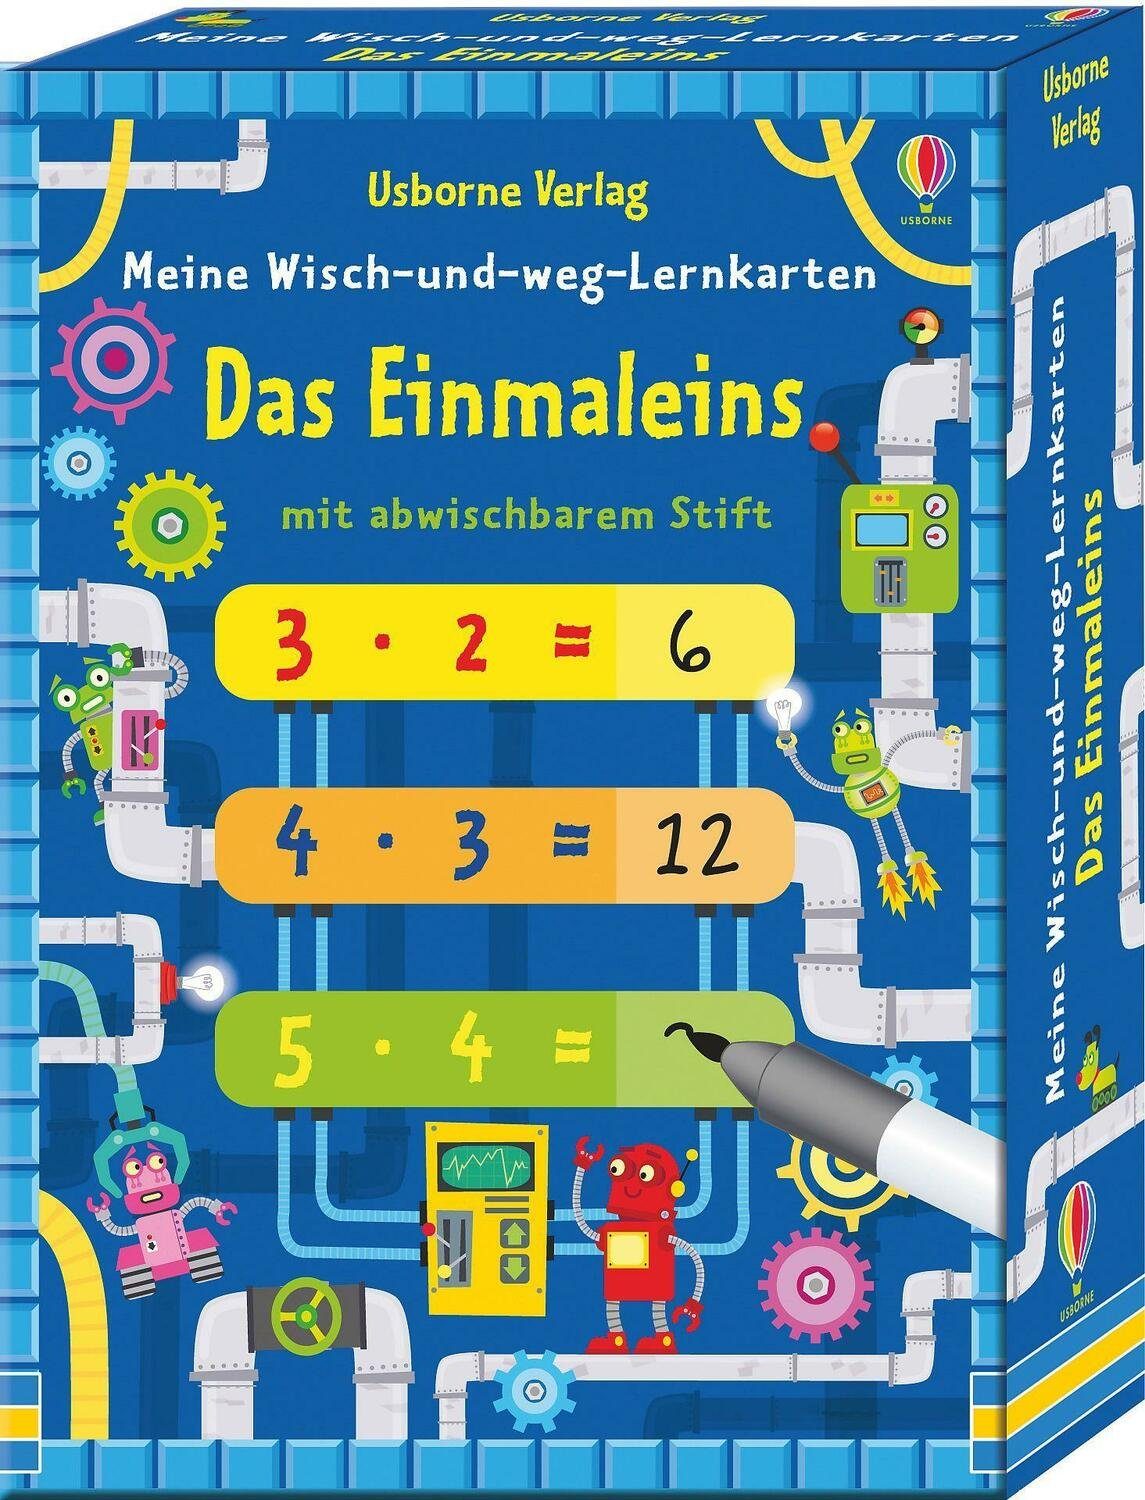 Einmaleins Wisch-und-weg-Lernkarten: Spiel, Das Verlag Meine Usborne